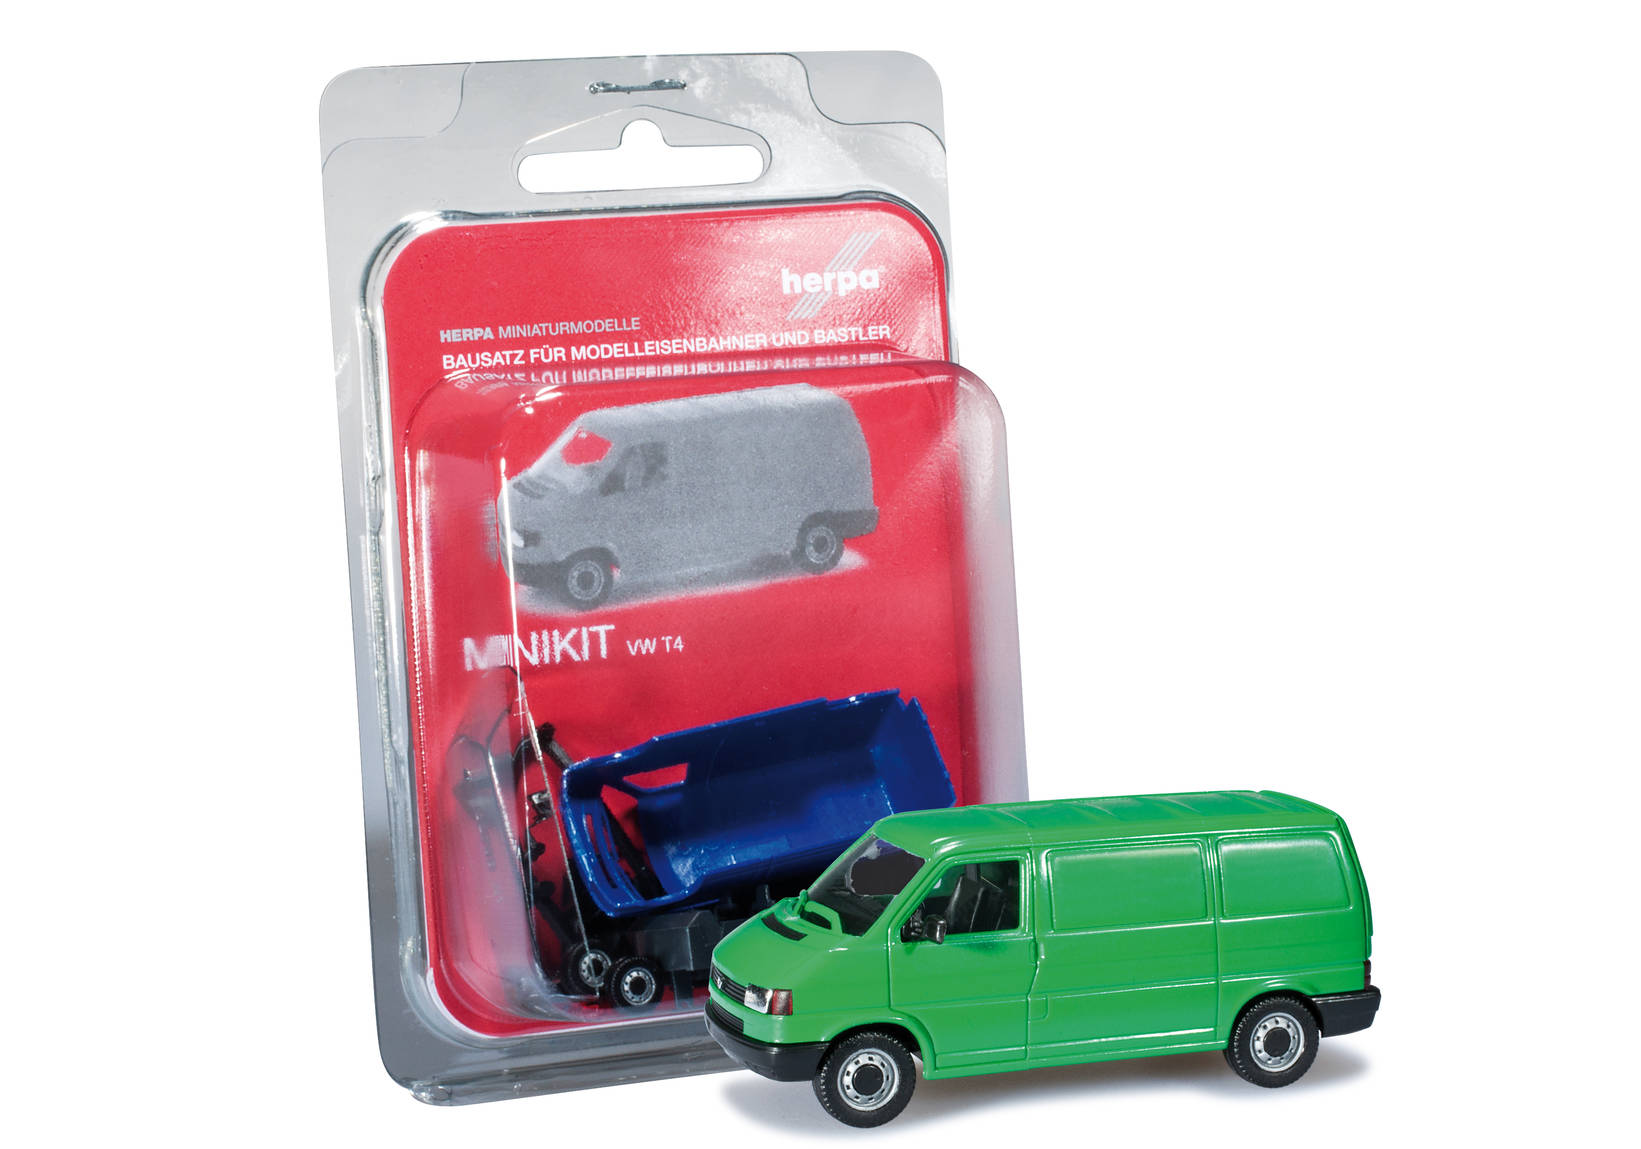 Herpa MiniKit: VW T4 transporter, mint green